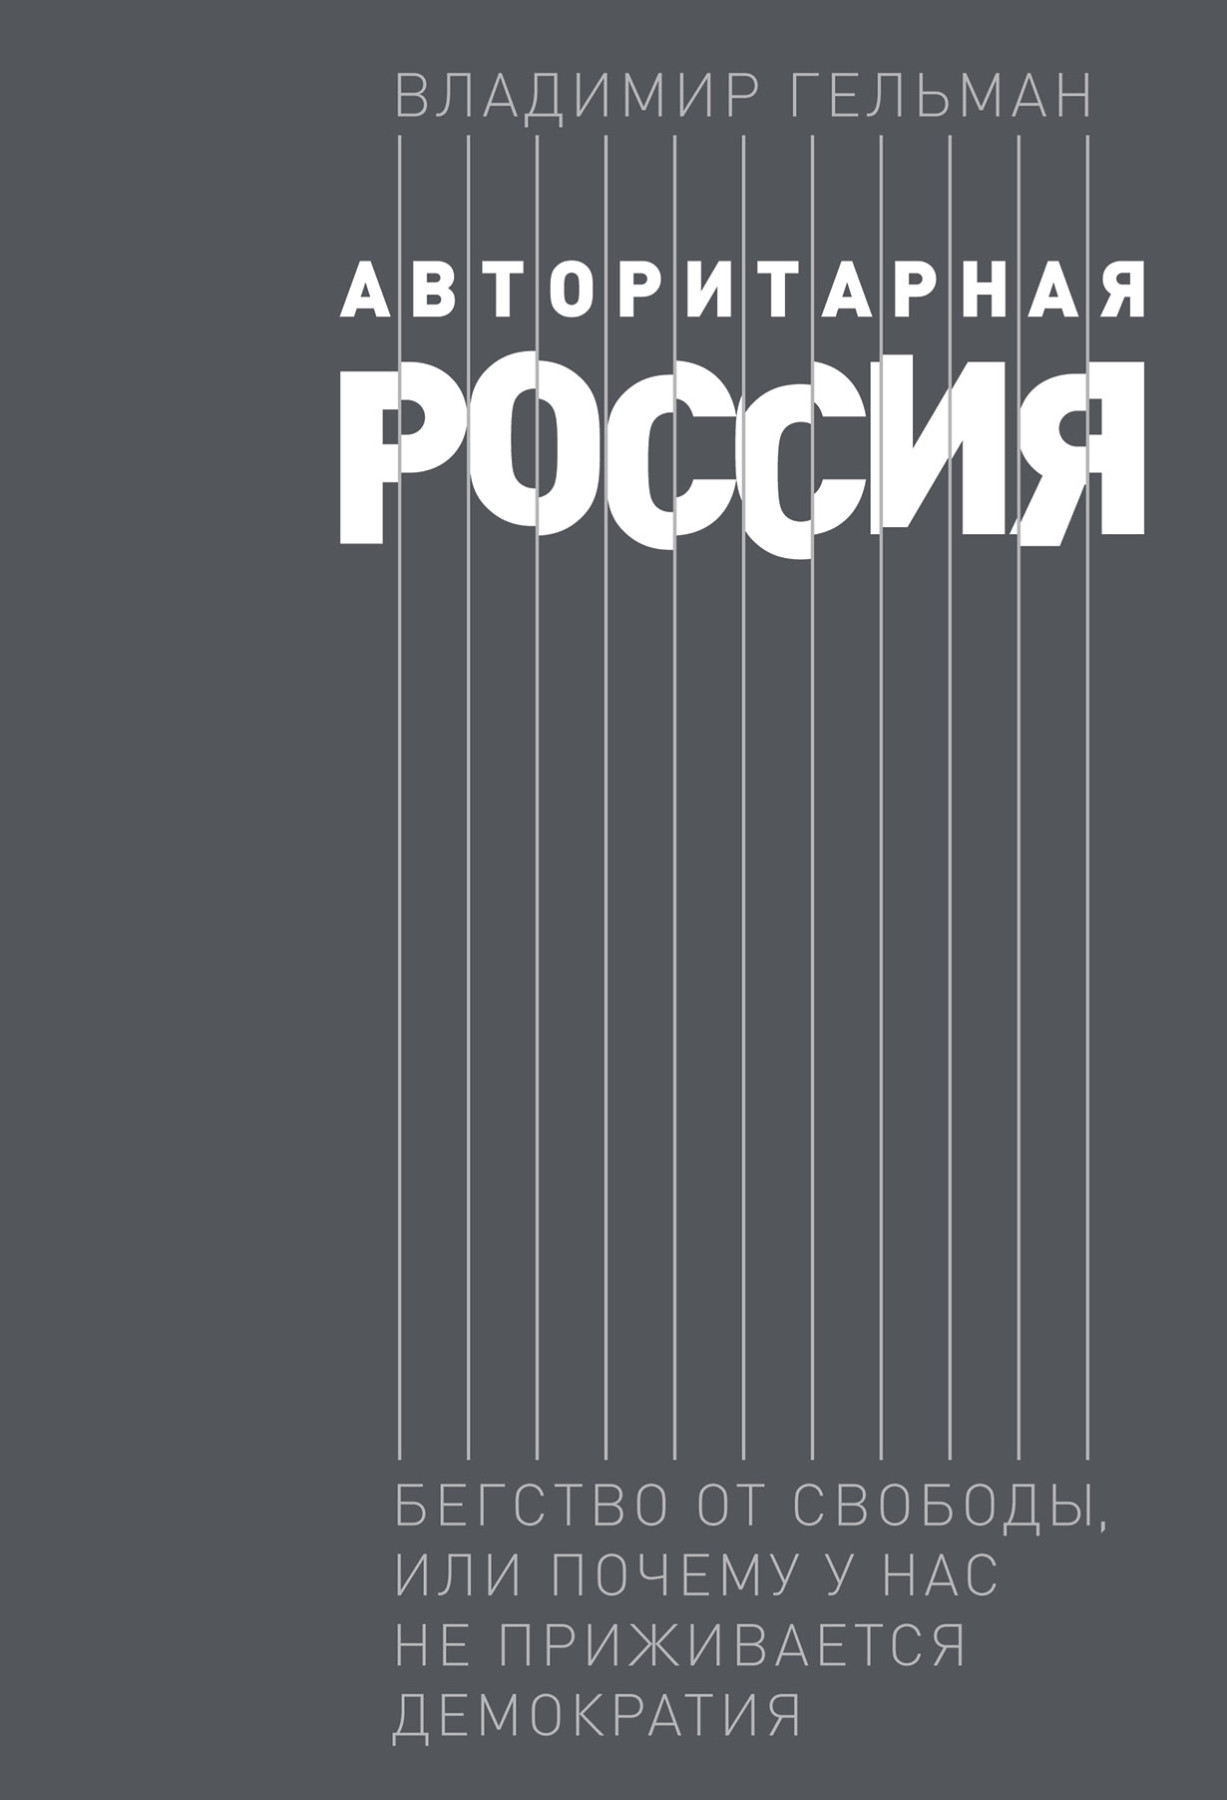 Авторитарная Россия обложка.